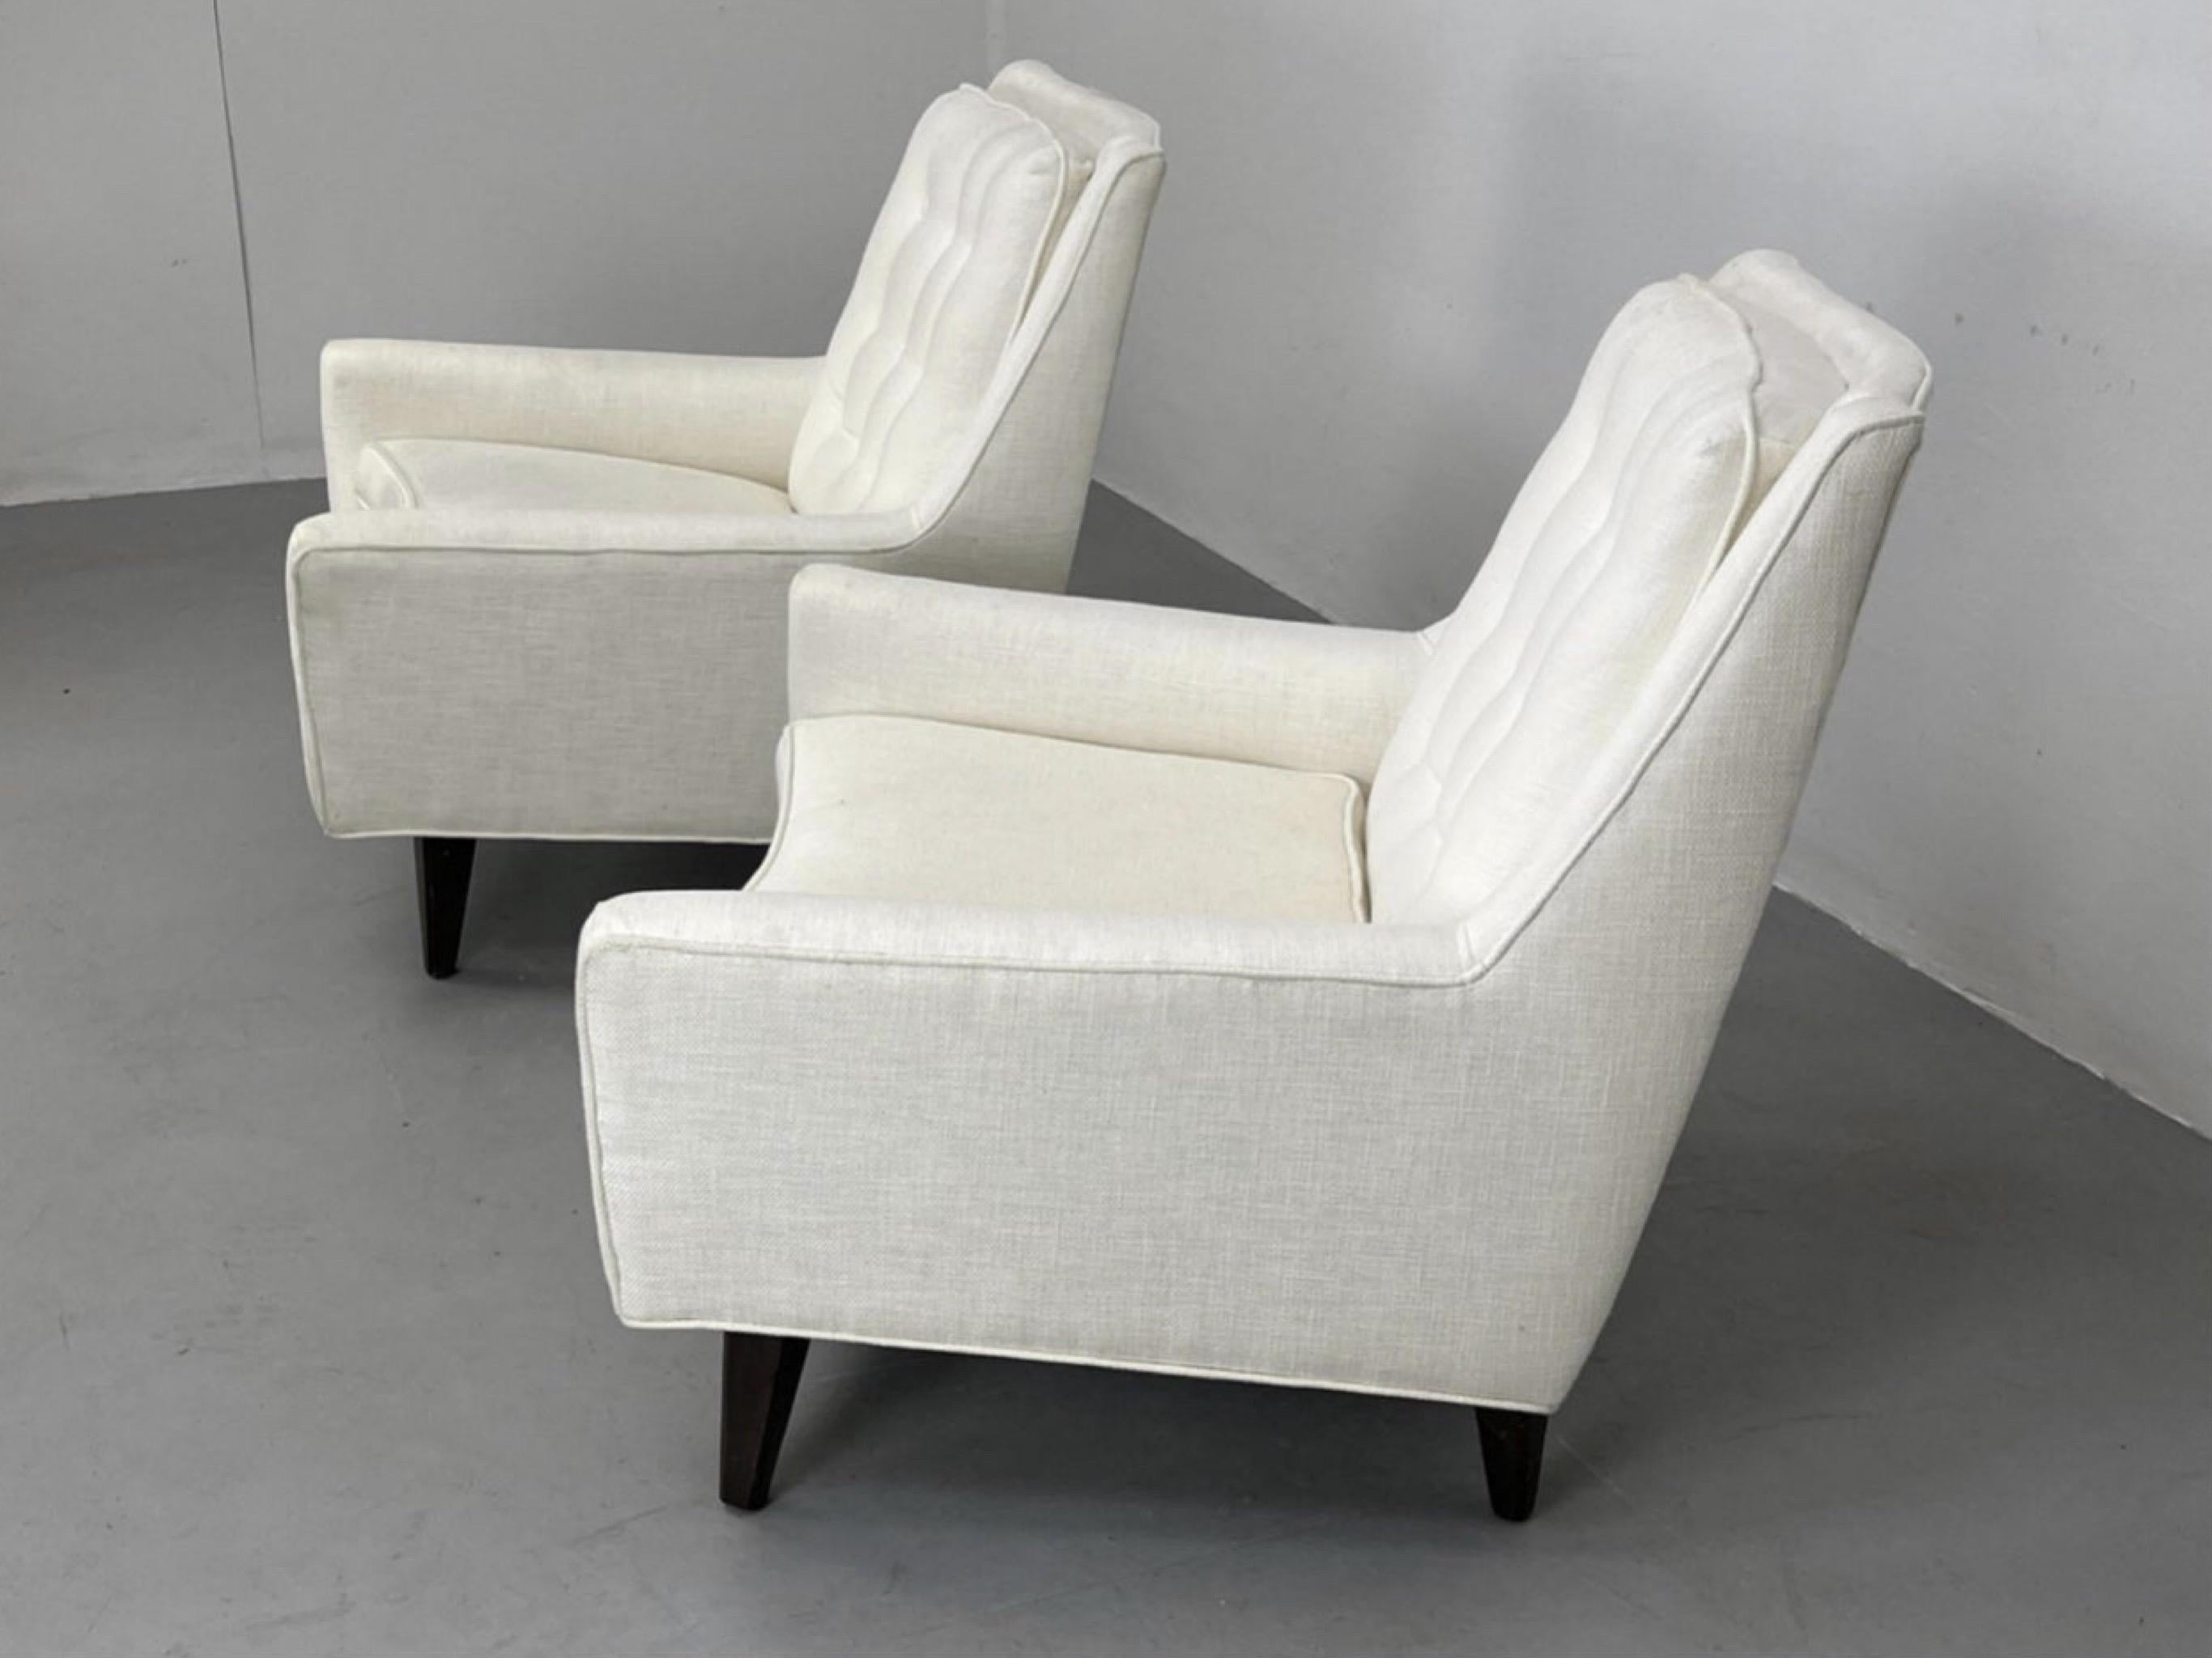 Edward Wormley zugeschriebene weiße gepolsterte Lounge-Stühle - ein Paar (amerikanisch)